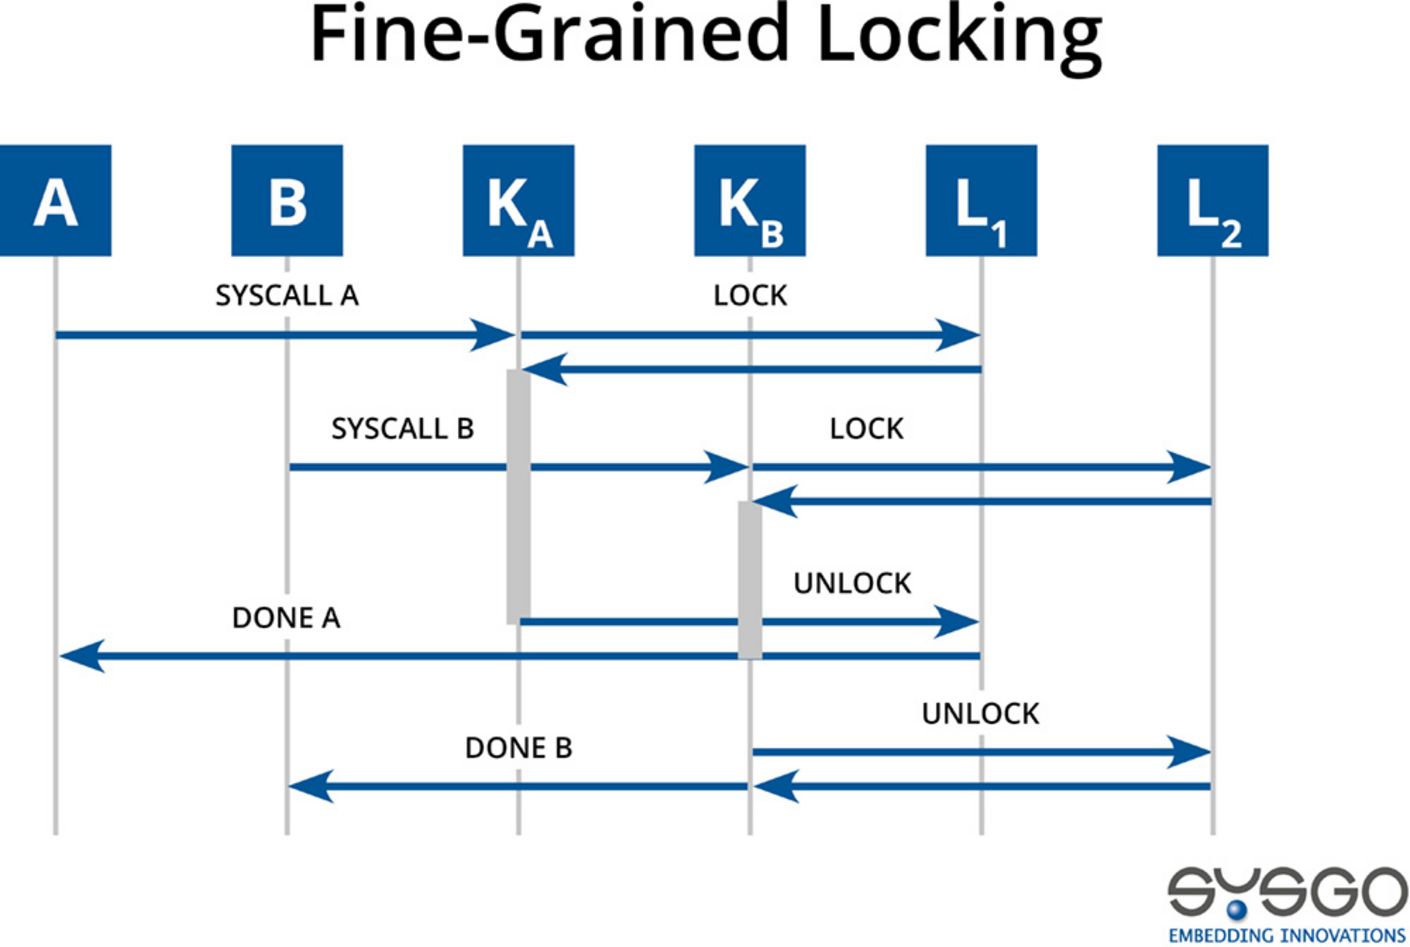 Fine-grained Locking